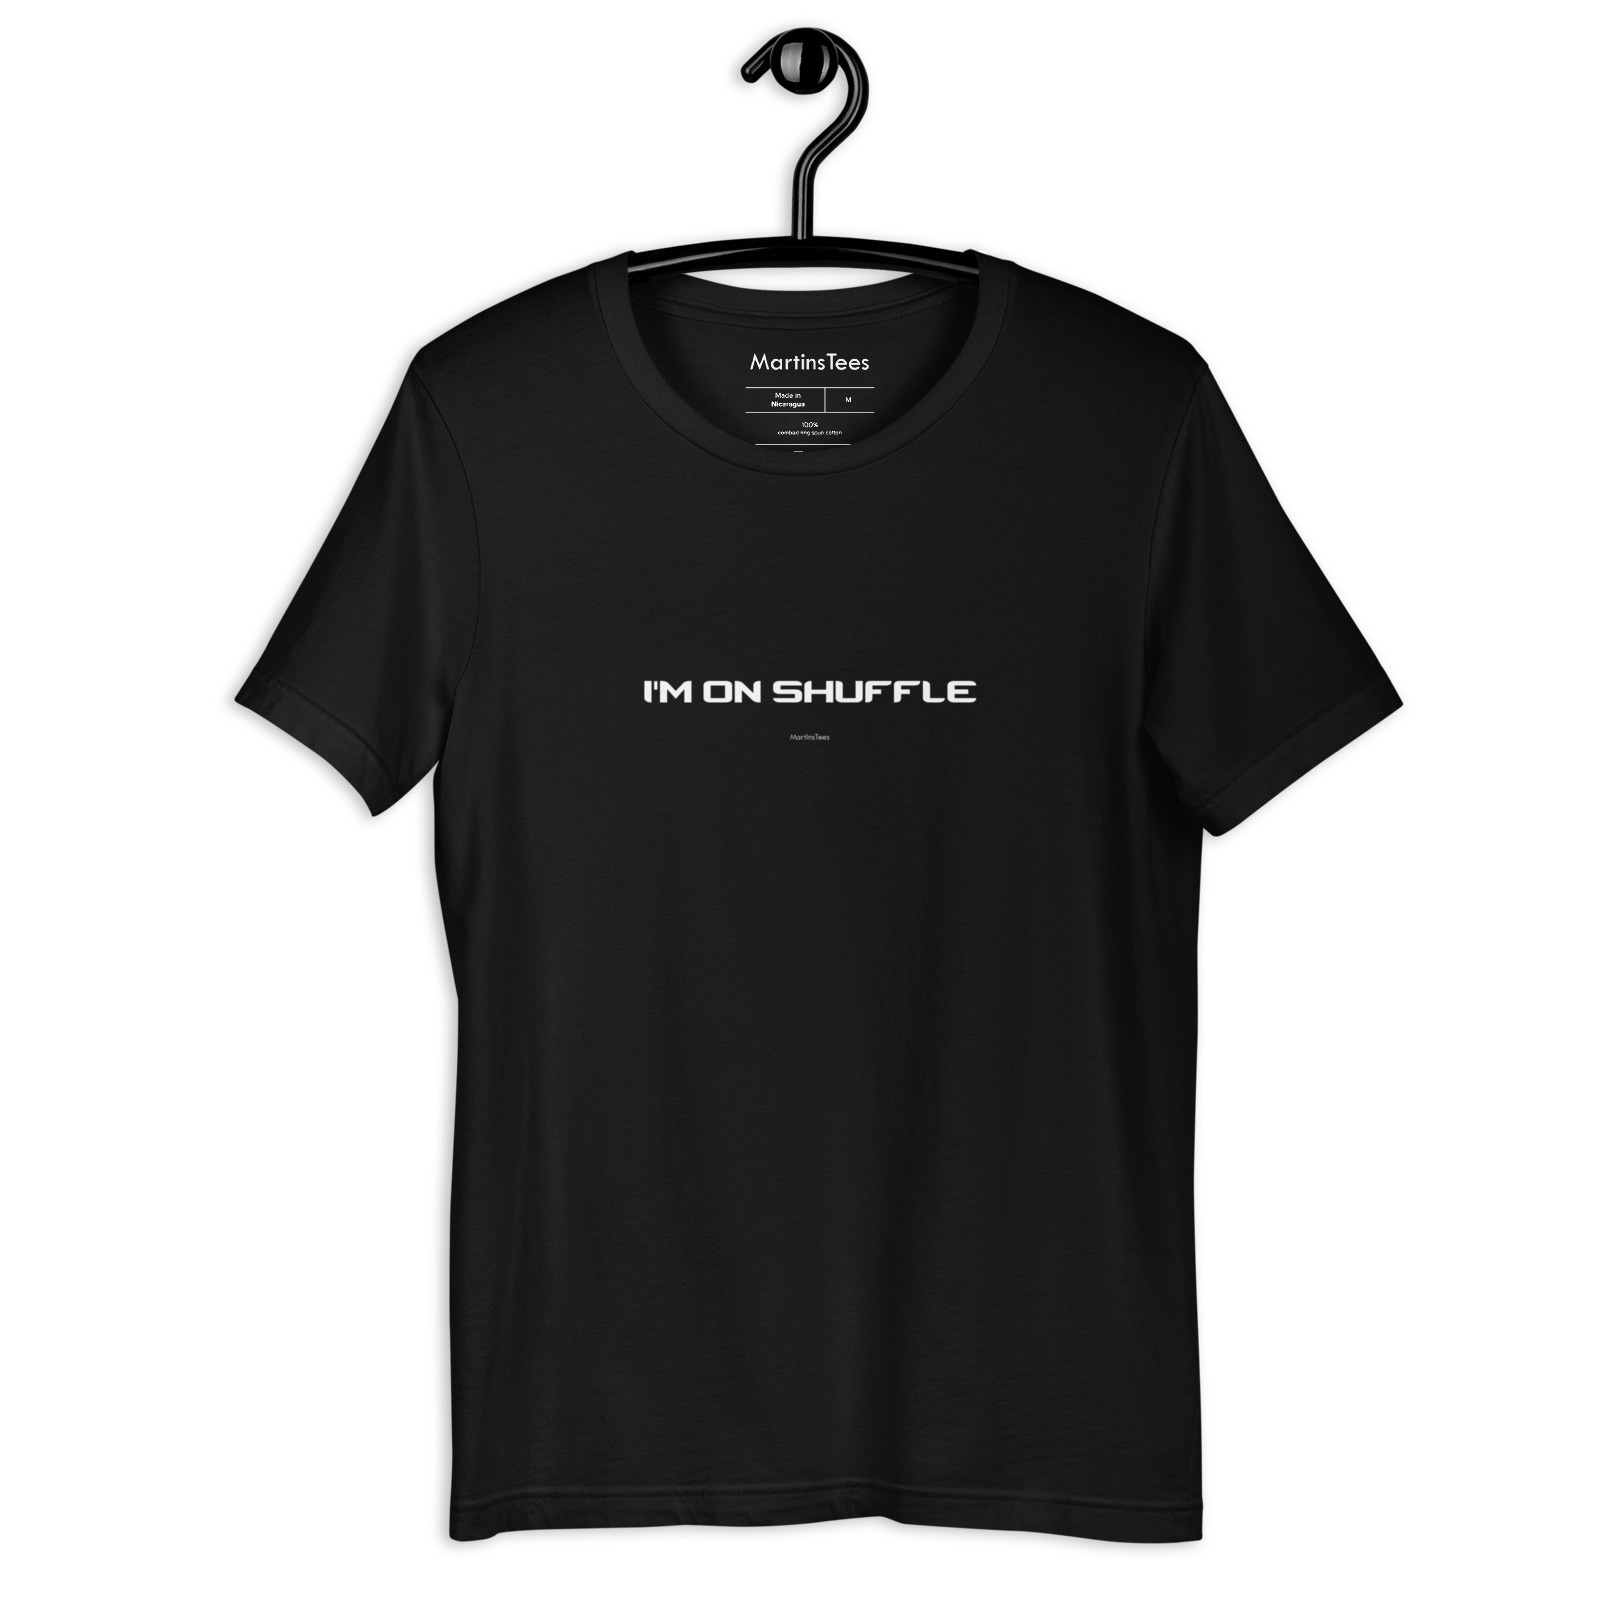 T-shirt: I'M ON SHUFFLE